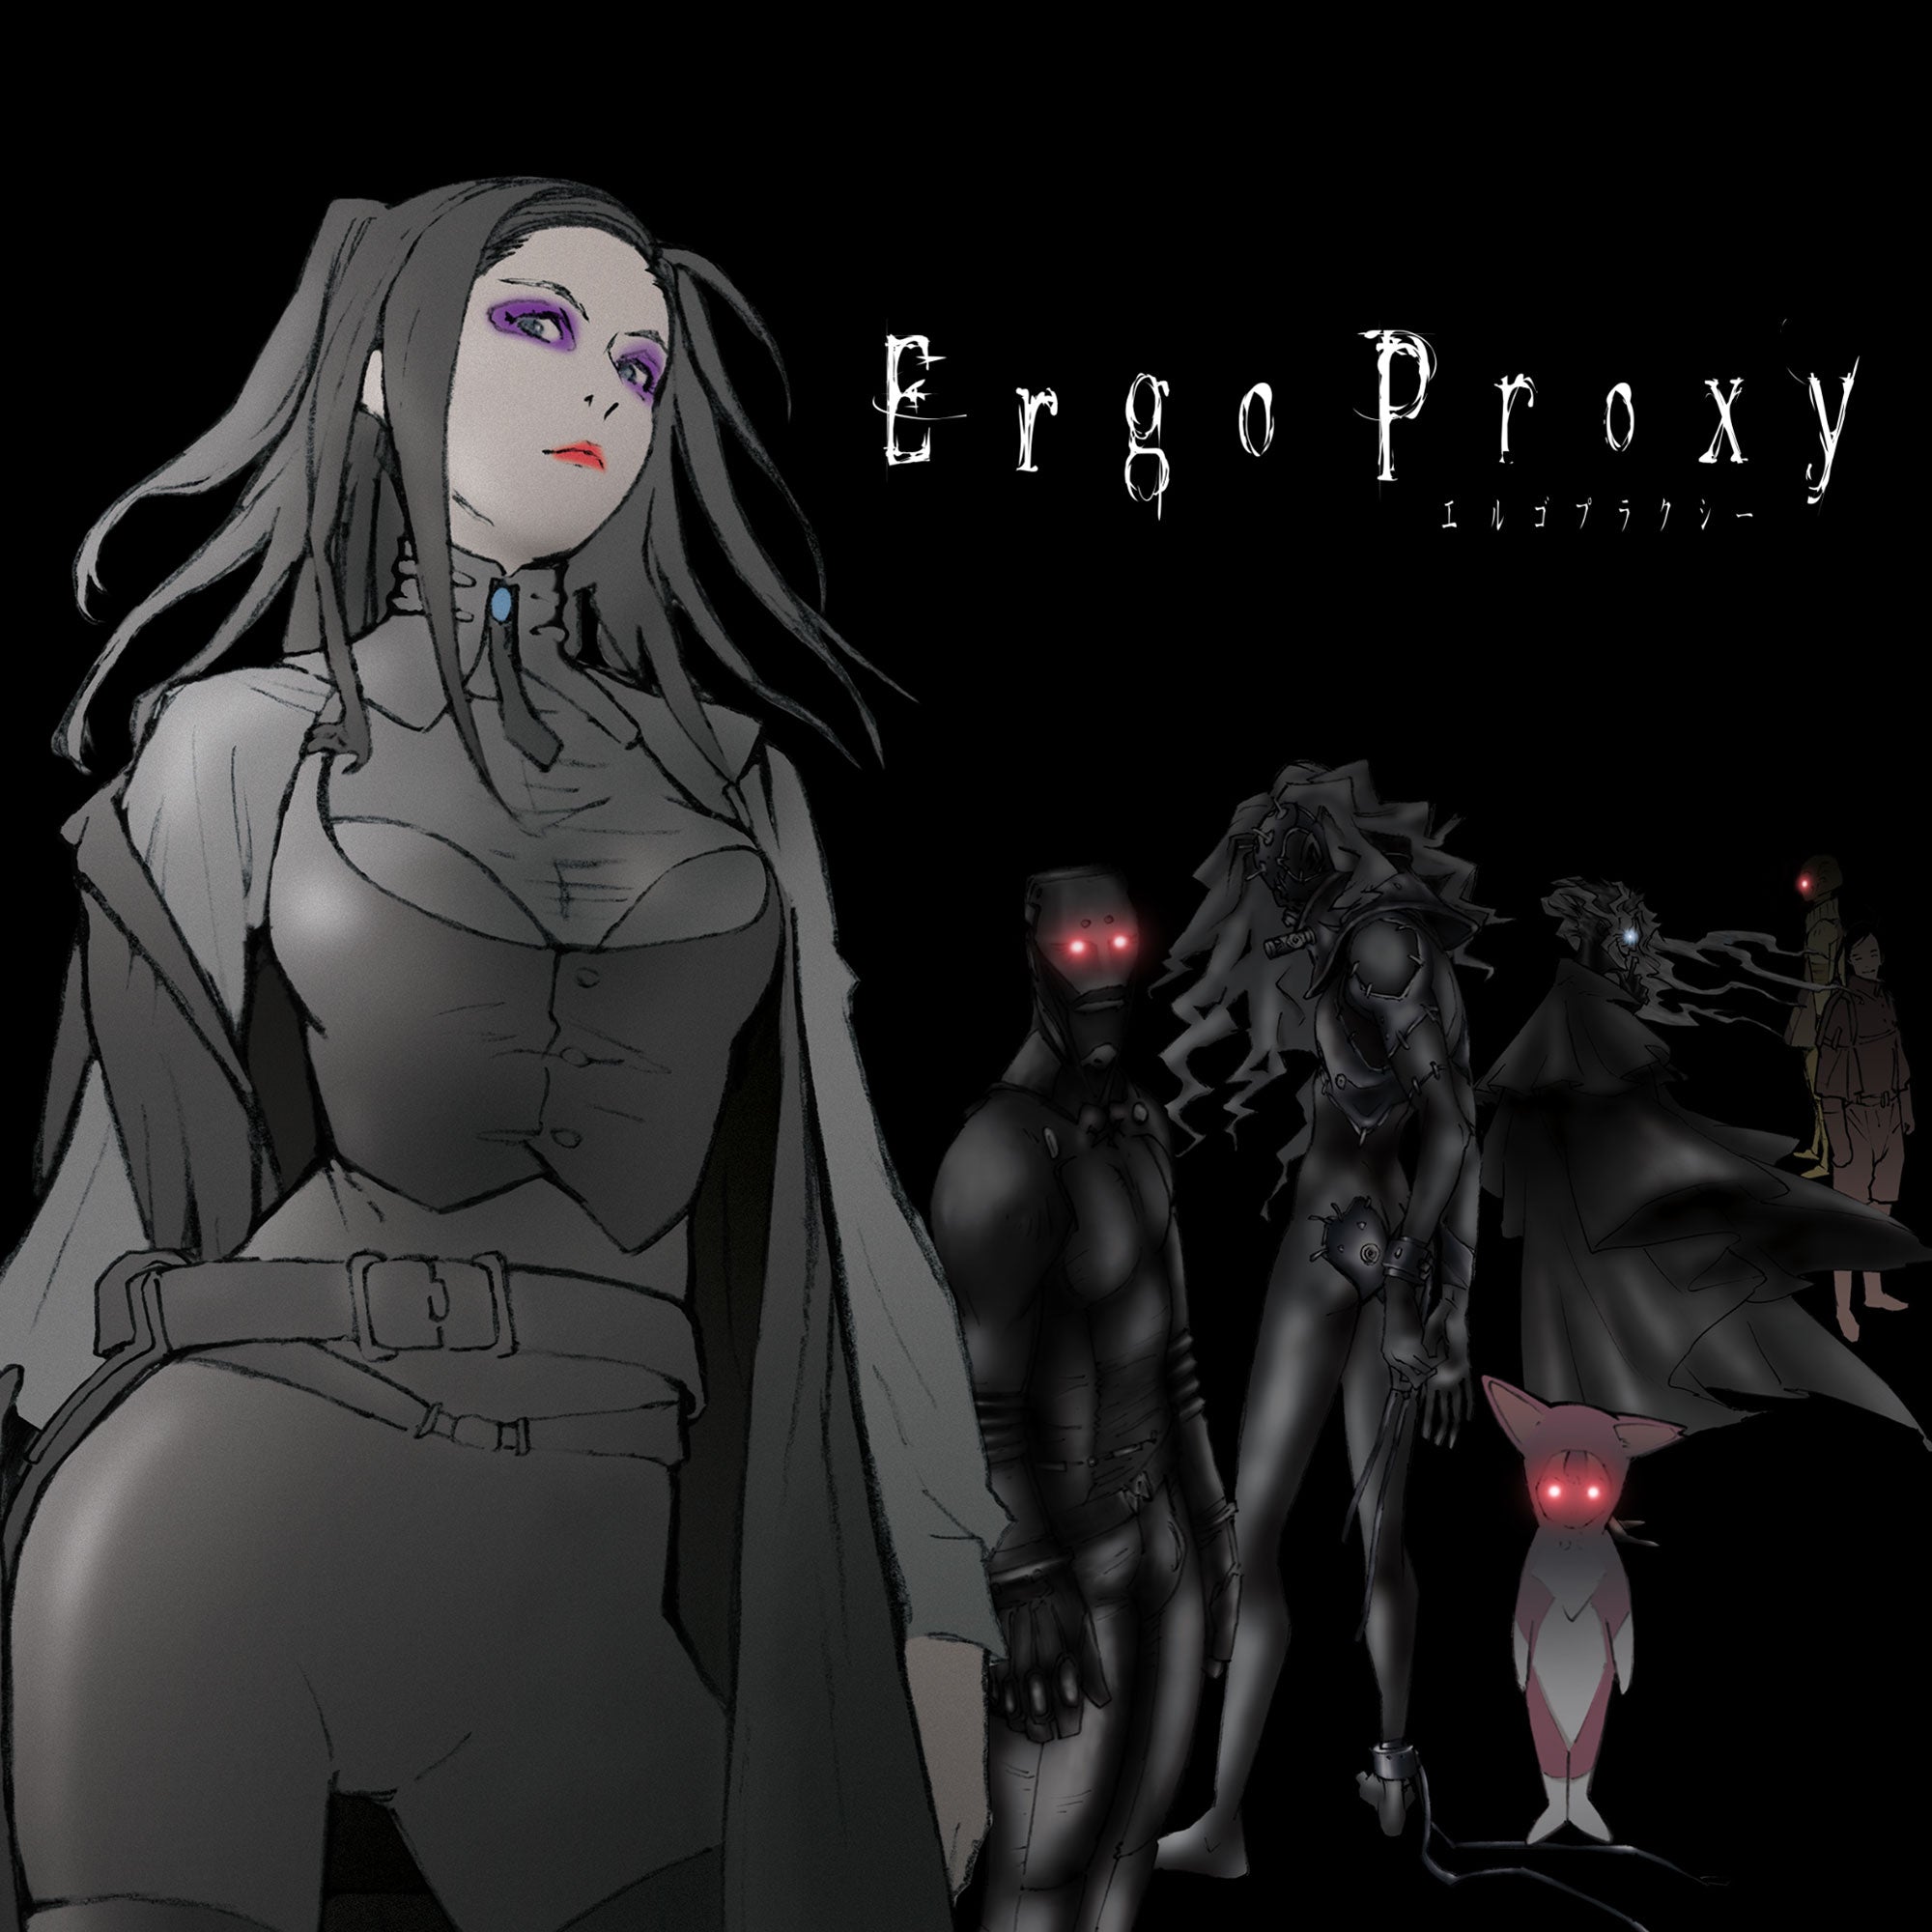 Ergo Proxy: The Conclusion